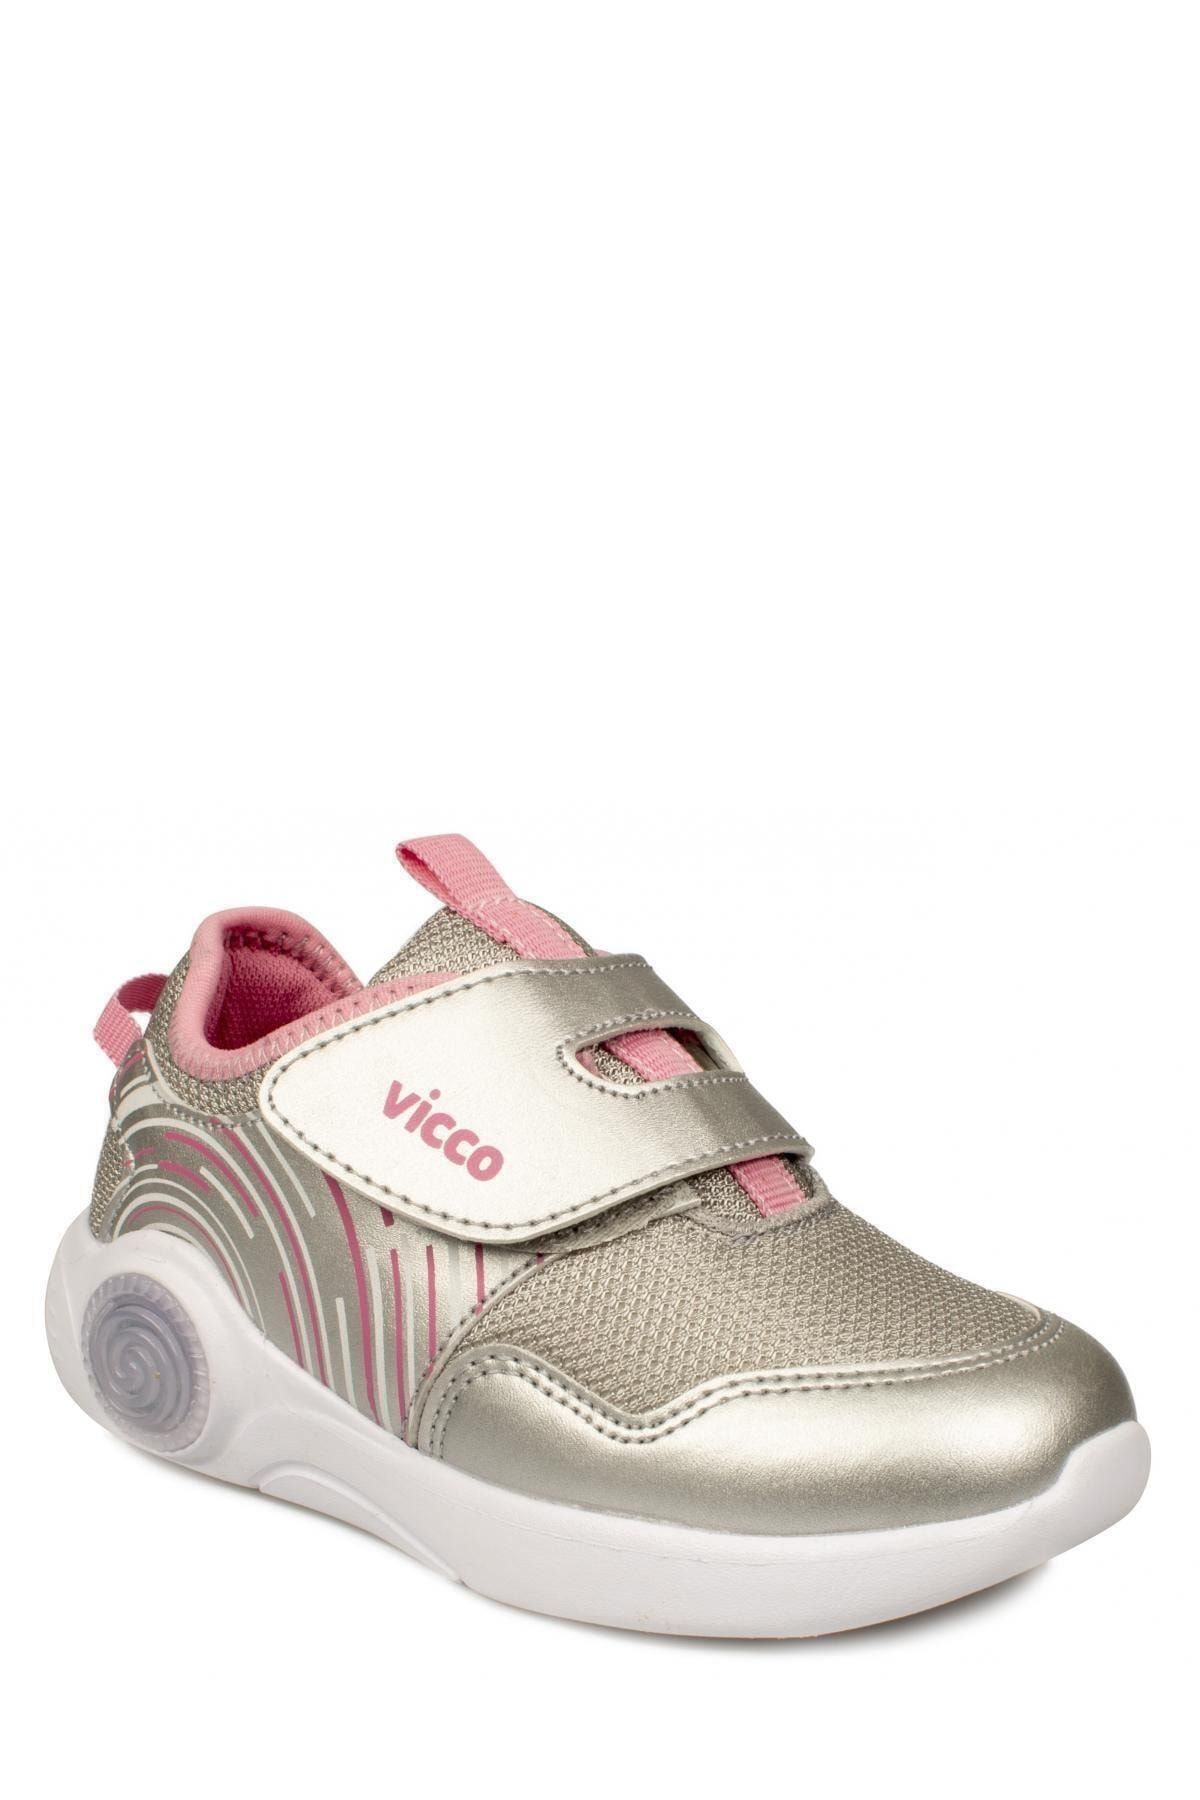 Vicco Kız Çocuk Gümüş 346.p20y.213 Phylon Işıklı Çocuk Spor Ayakkabı